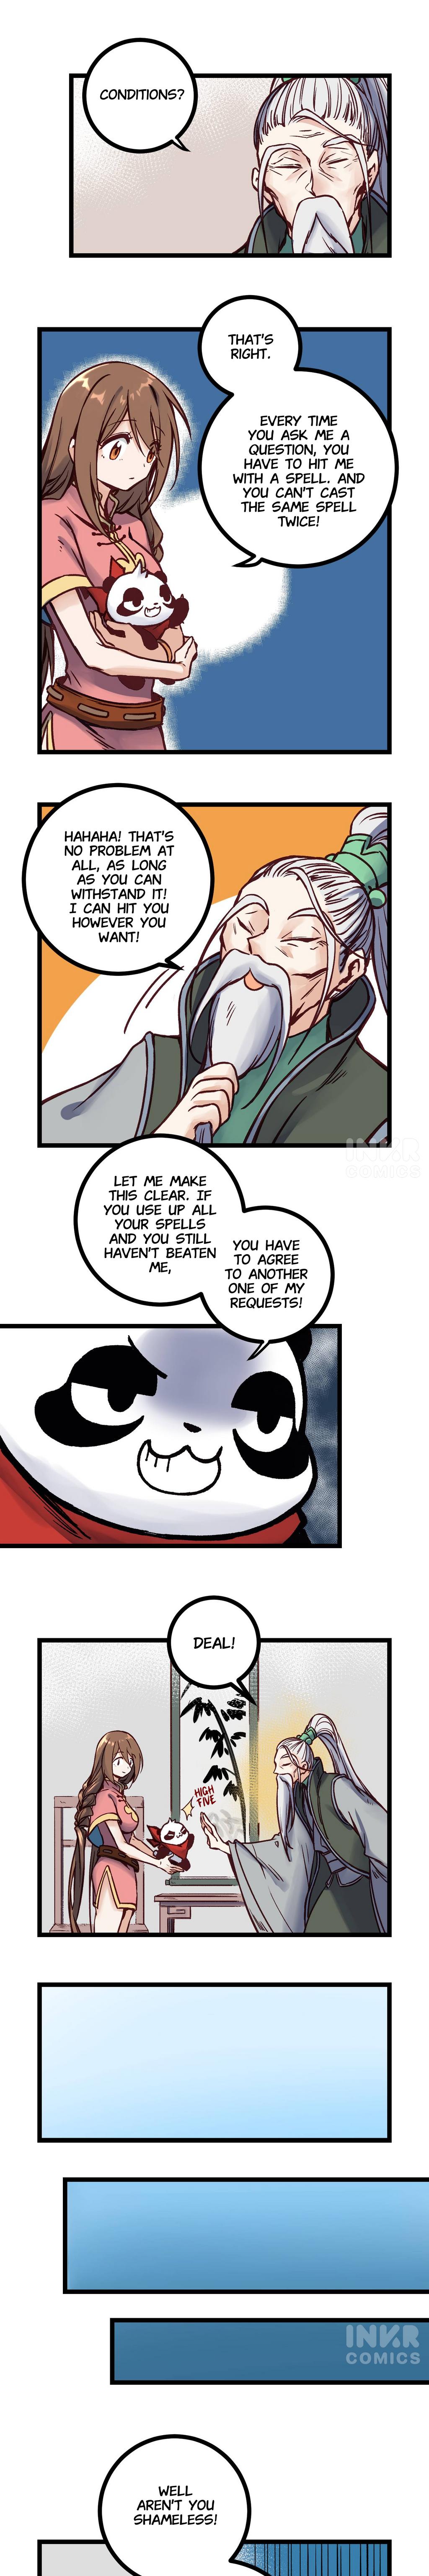 Naughty Panda - Page 1